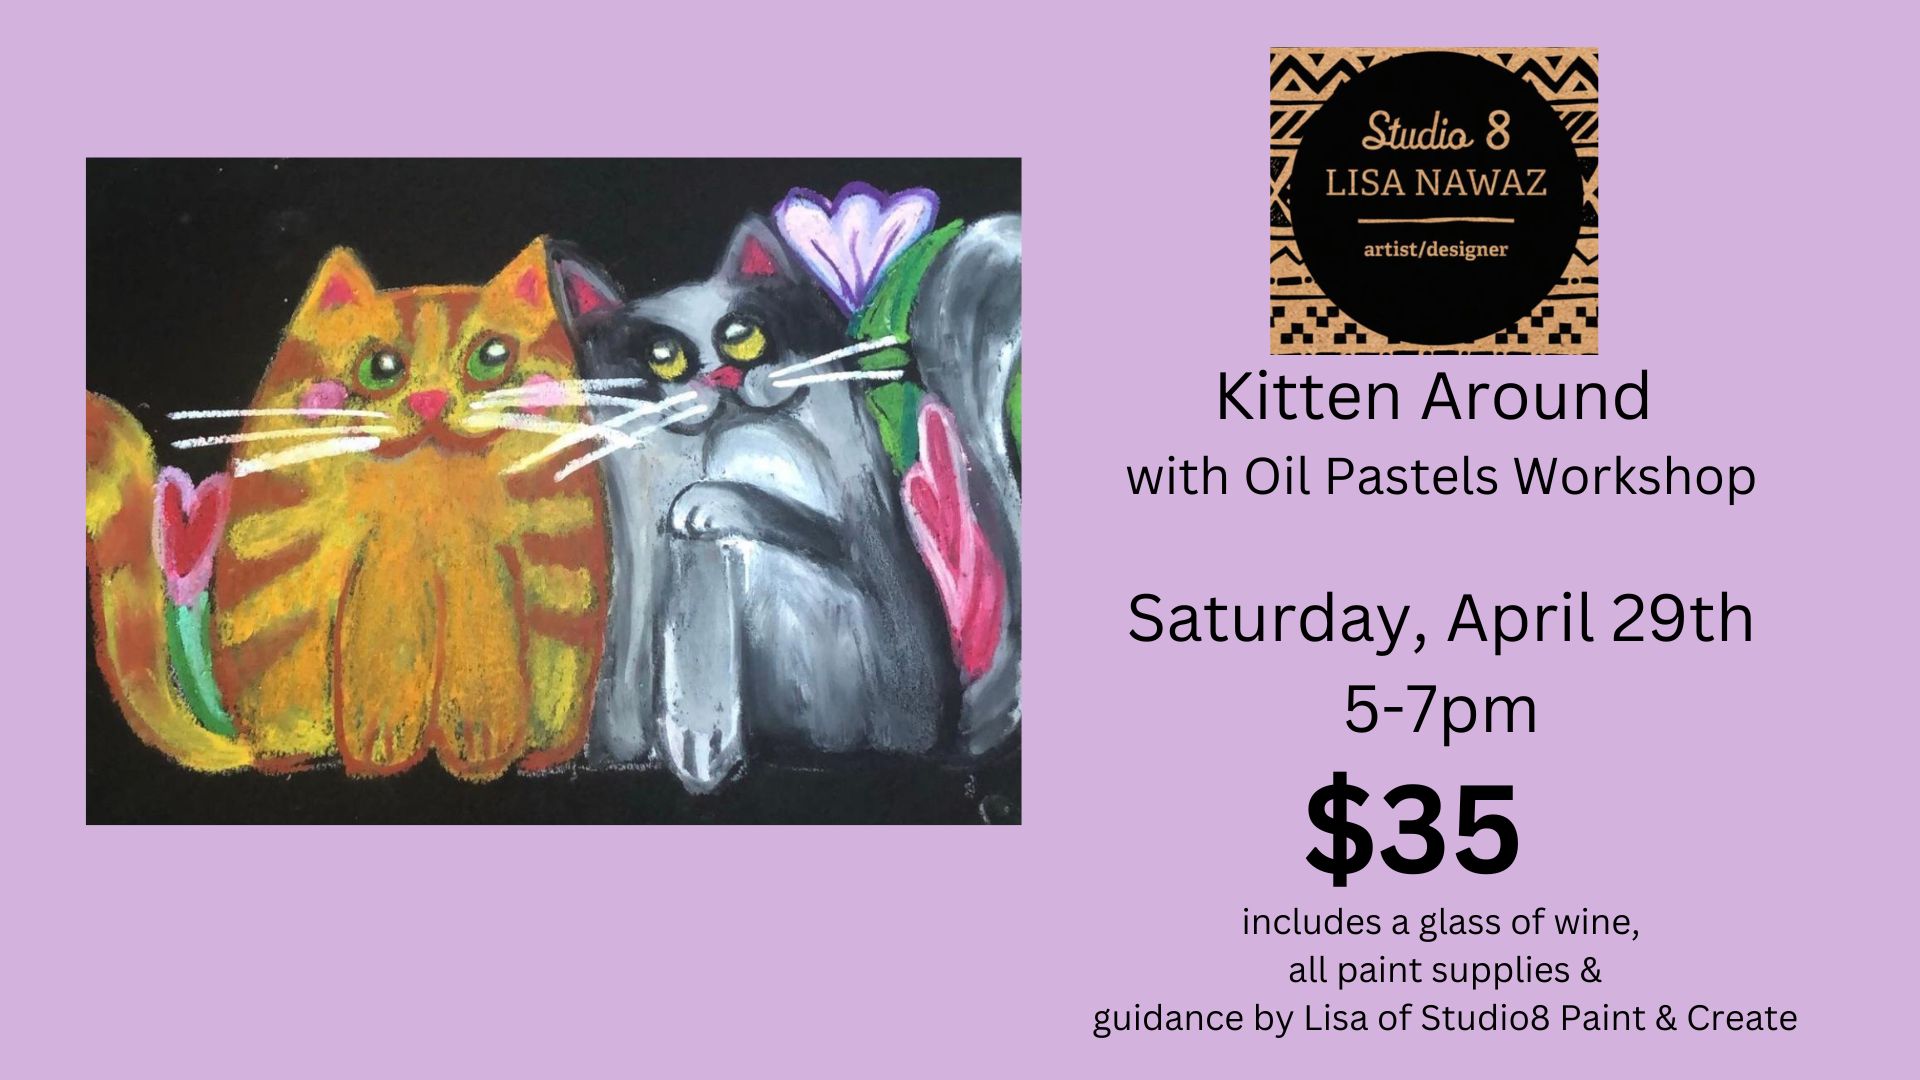 Kitten Around with Oil Pastels Workshop